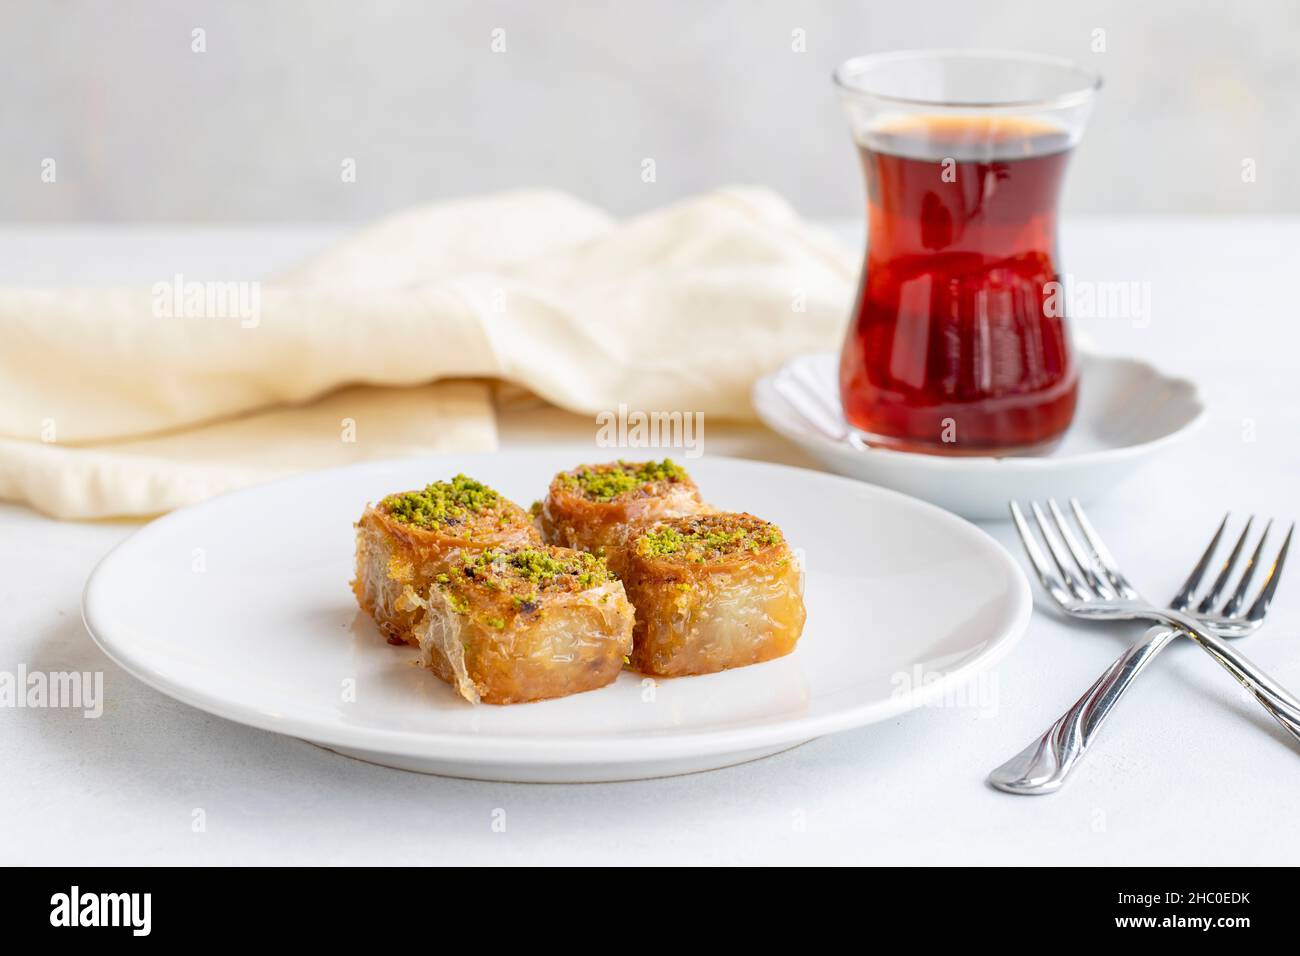 Dessert de baklava pistache sur fond blanc.Dessert turc. Assiette de pistachio baklava. Sorbet pâtisserie méditerranéenne. Fermer Banque D'Images